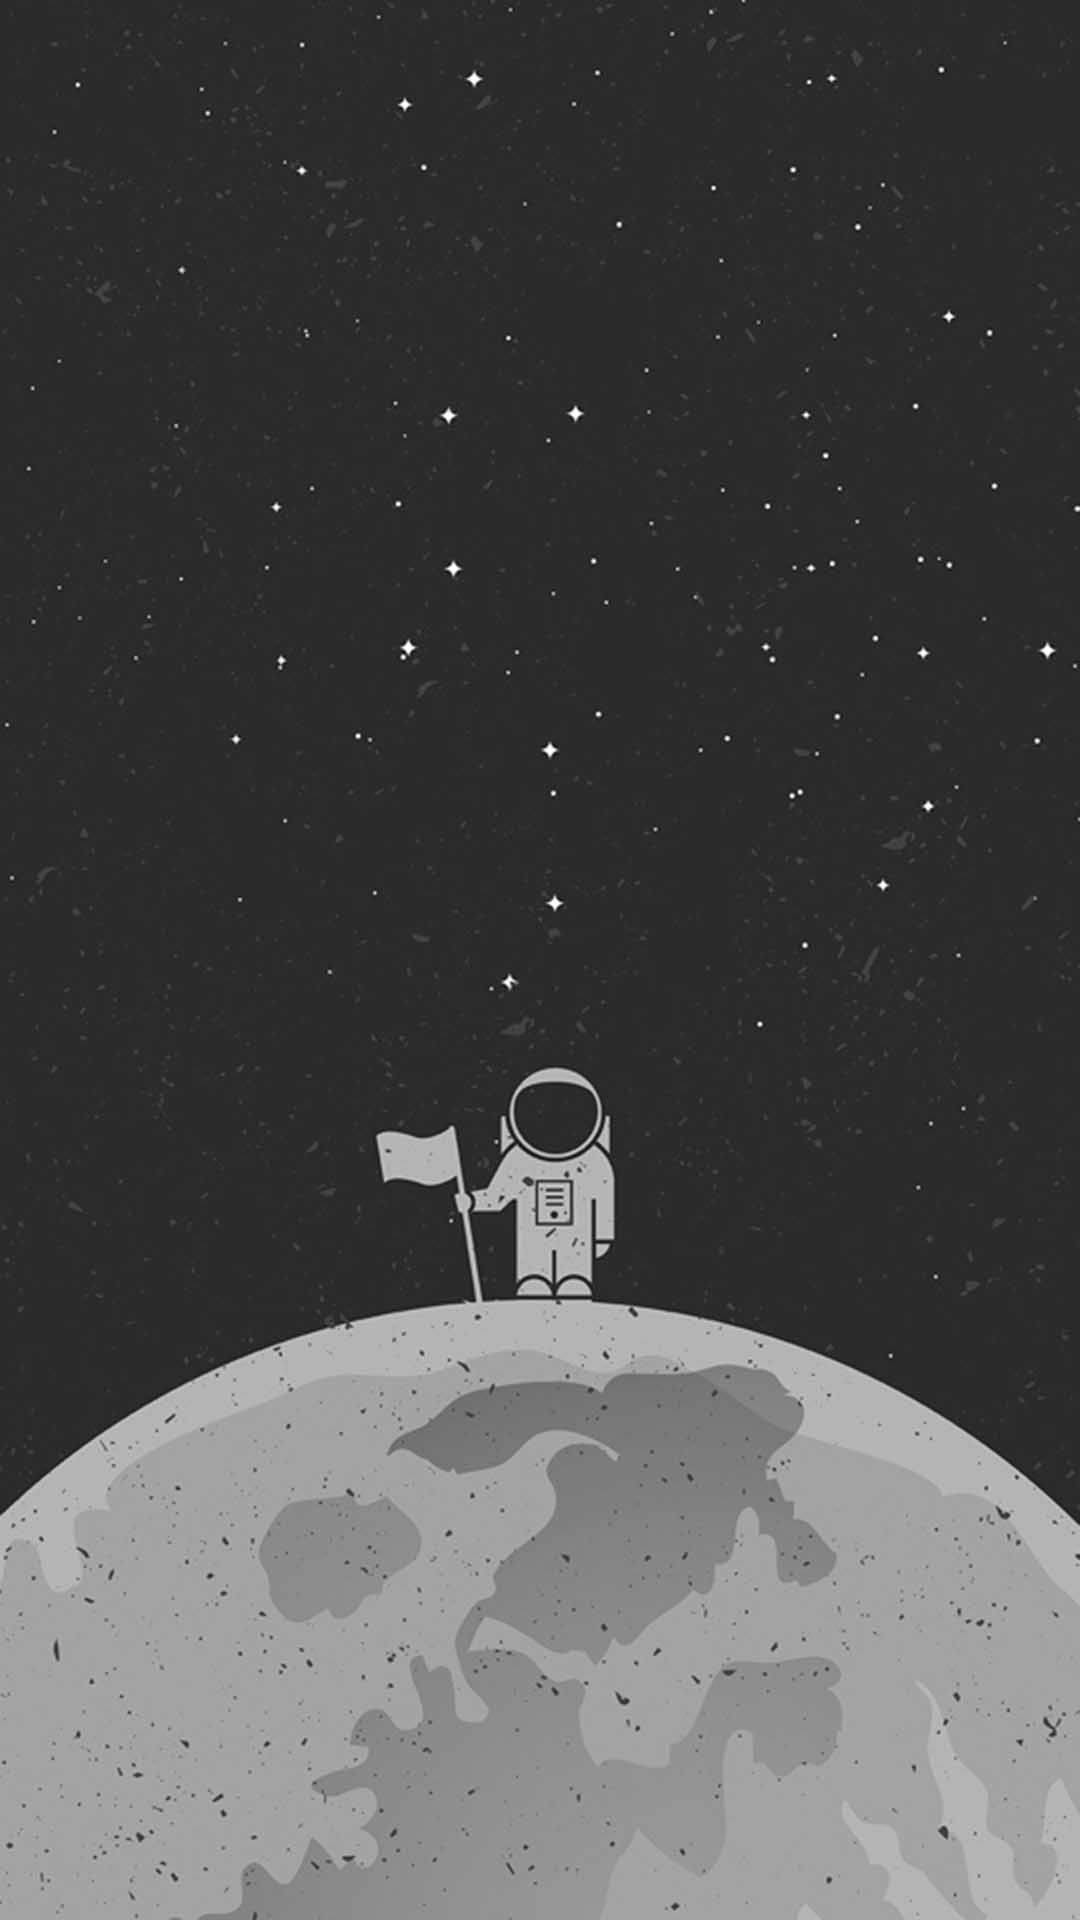 Cartoon Astronaut With A Flag